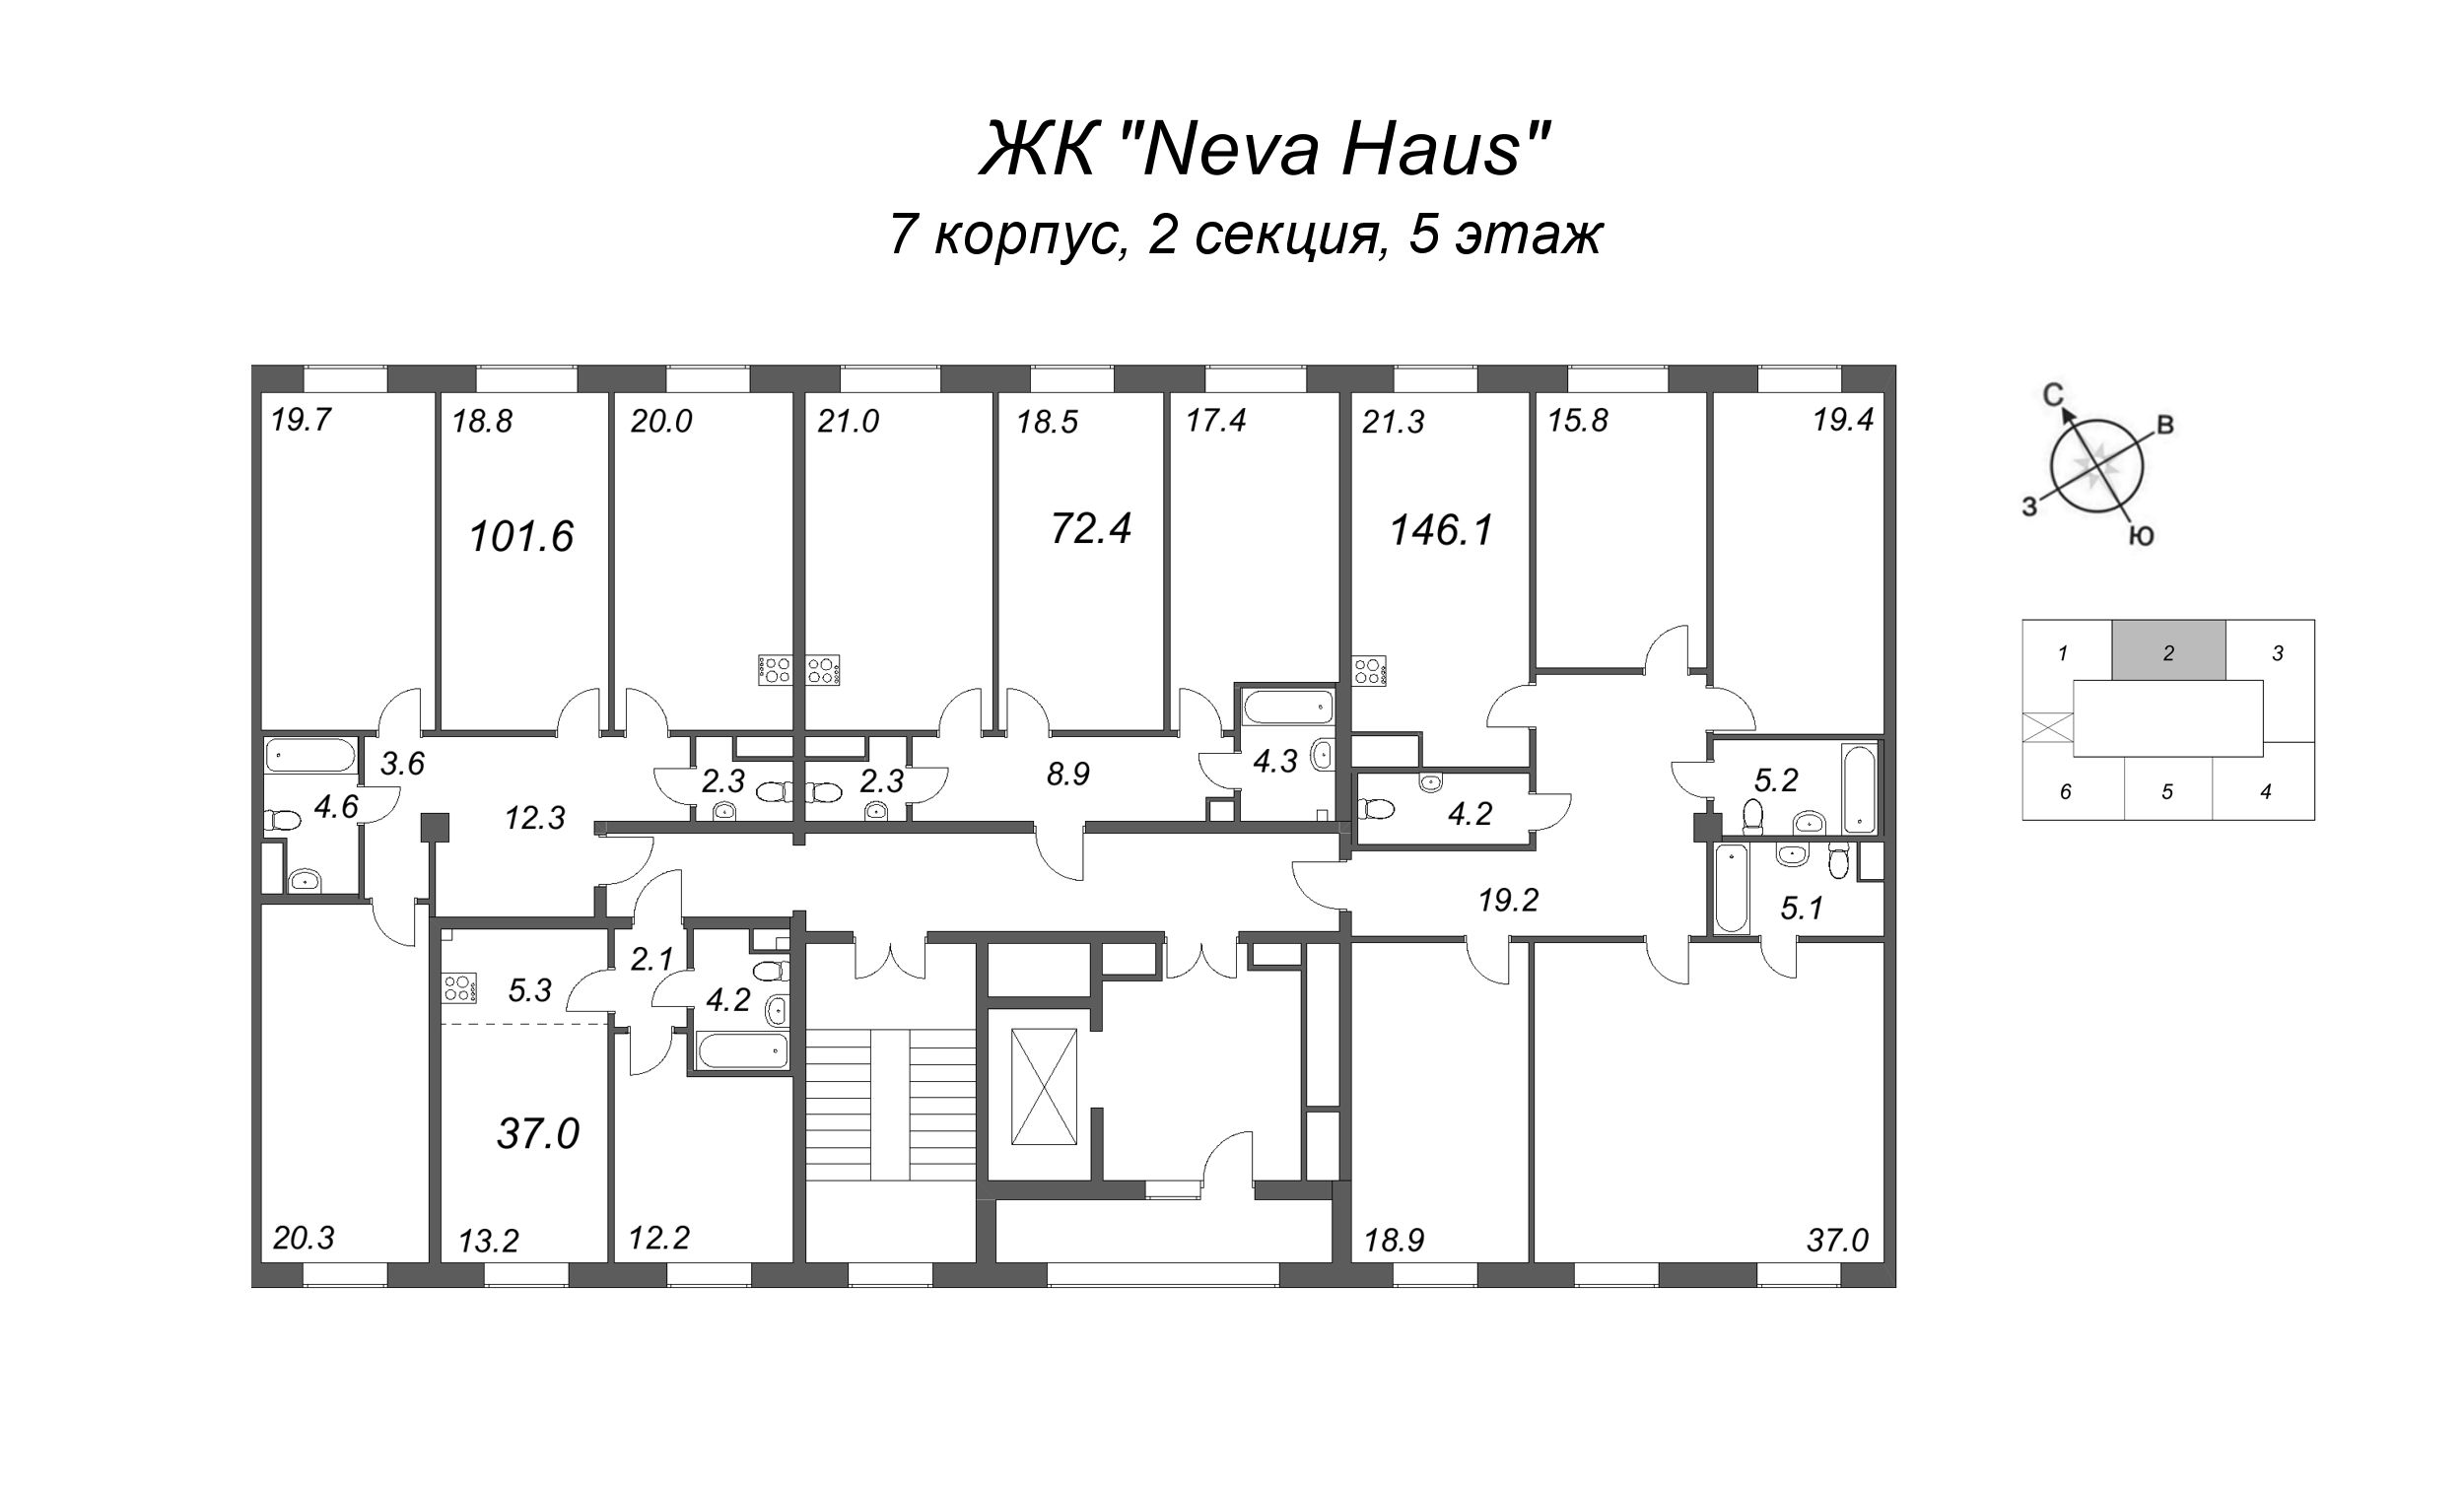 5-комнатная (Евро) квартира, 147.2 м² в ЖК "Neva Haus" - планировка этажа